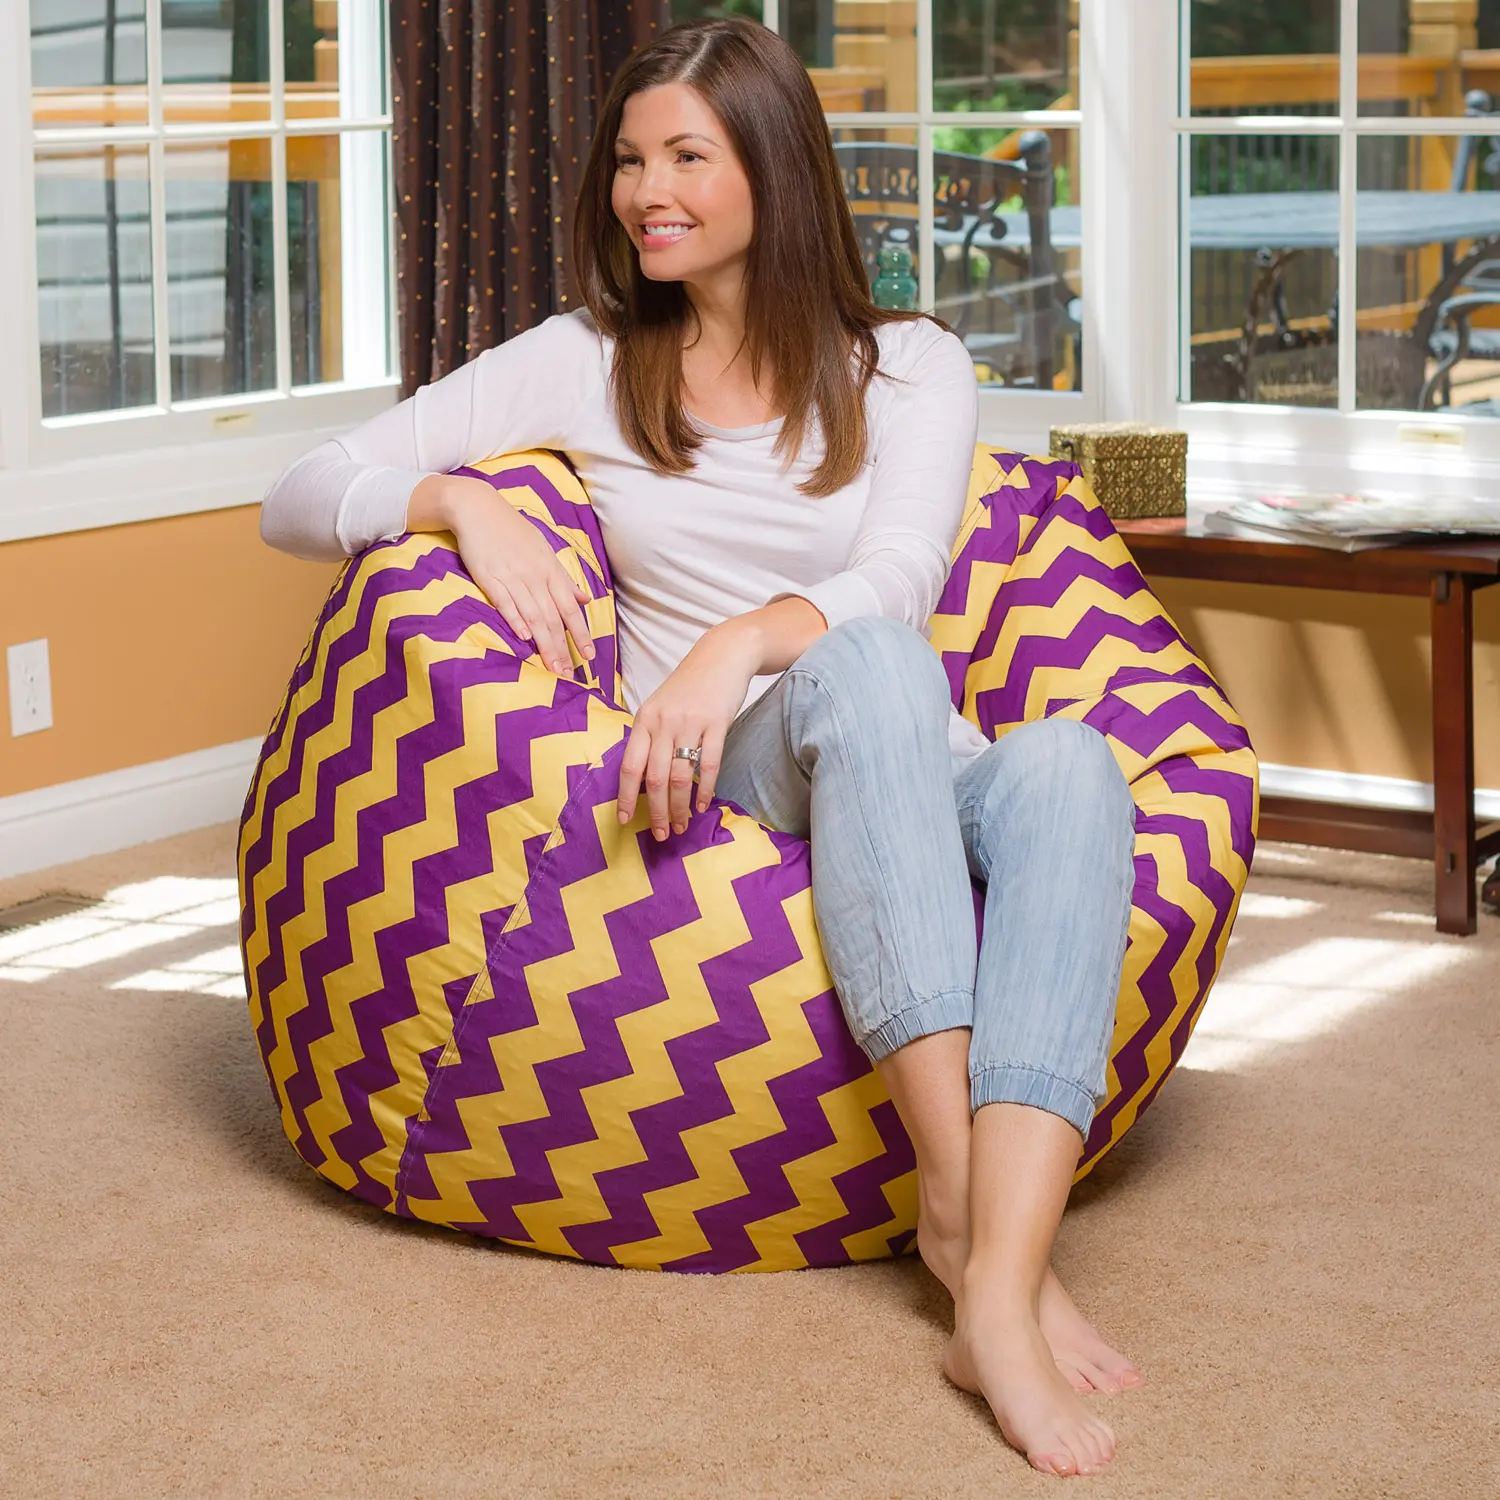 Violet et jaune mélange chevron enfants, adolescents et adultes Polyester tissu bouffée sac chaise longue meubles